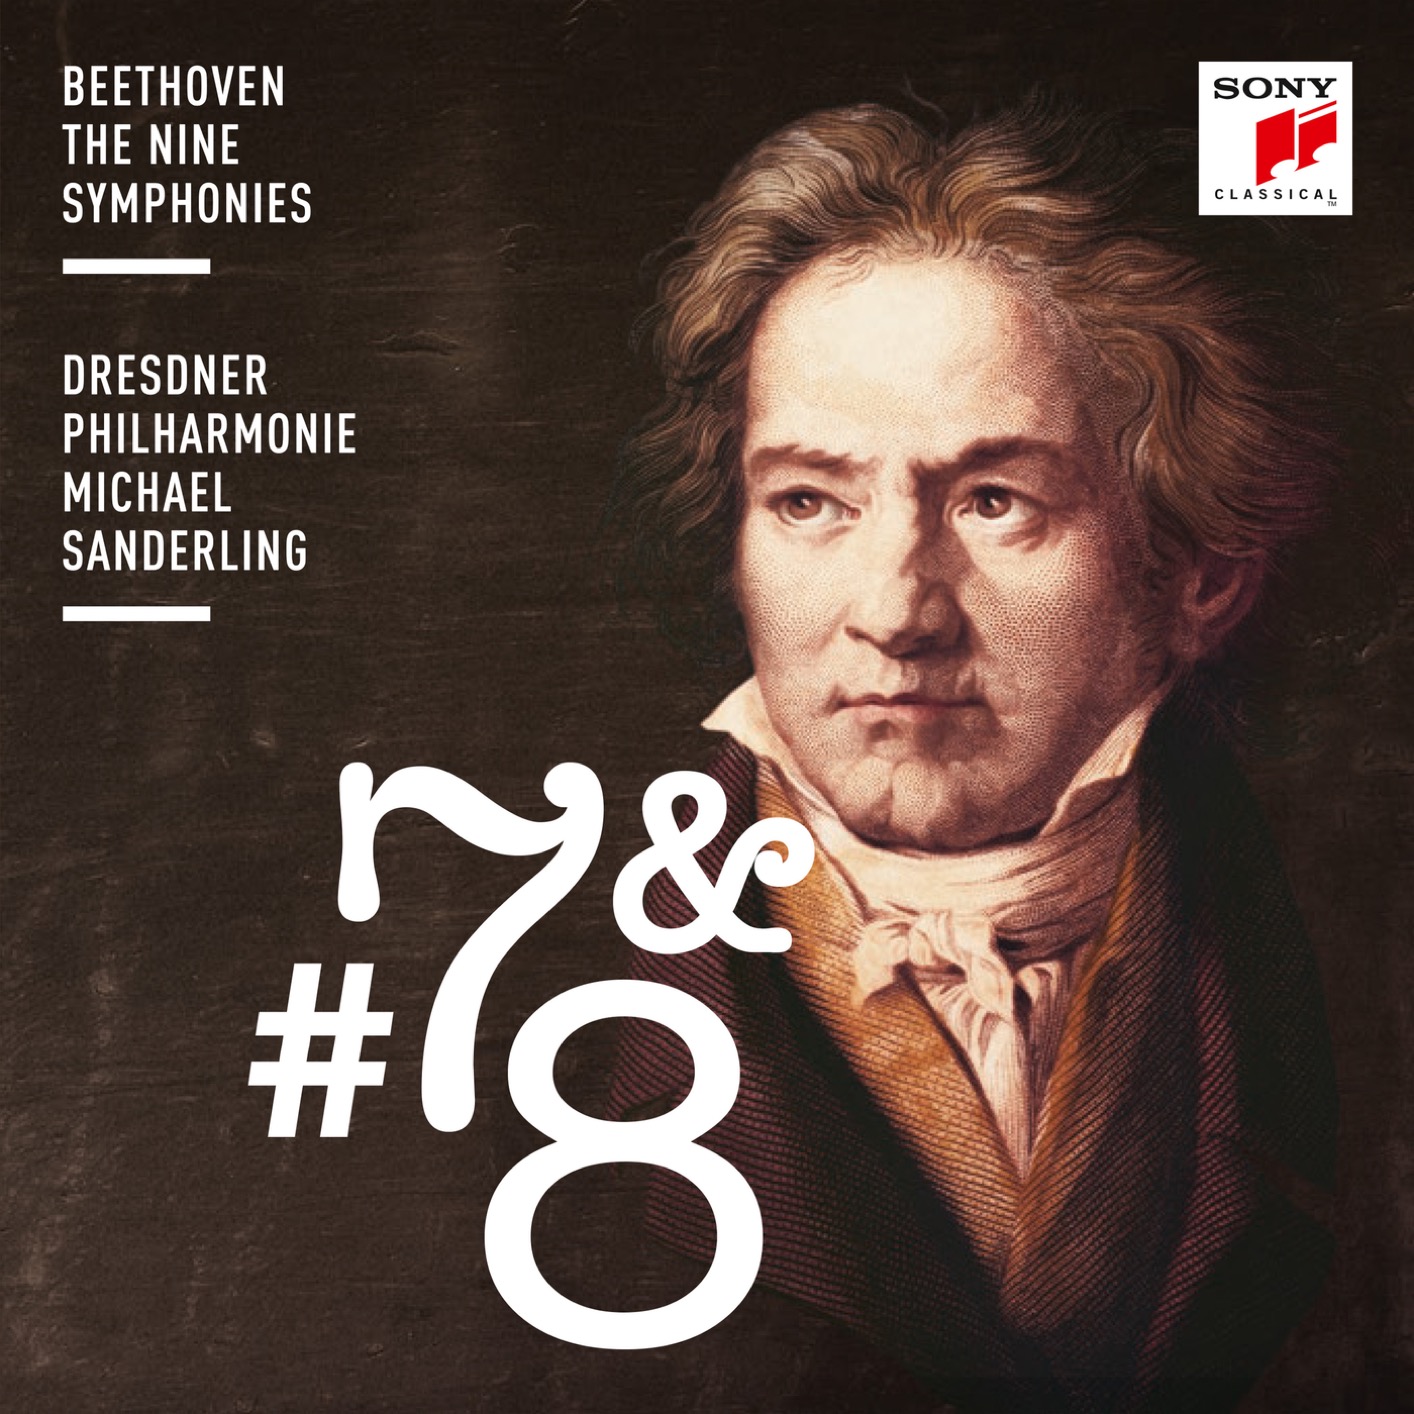 Dresdner Philharmonie & Michael Sanderling – Beethoven: Symphonies Nos. 7 & 8 (2018) [FLAC 24bit/96kHz]